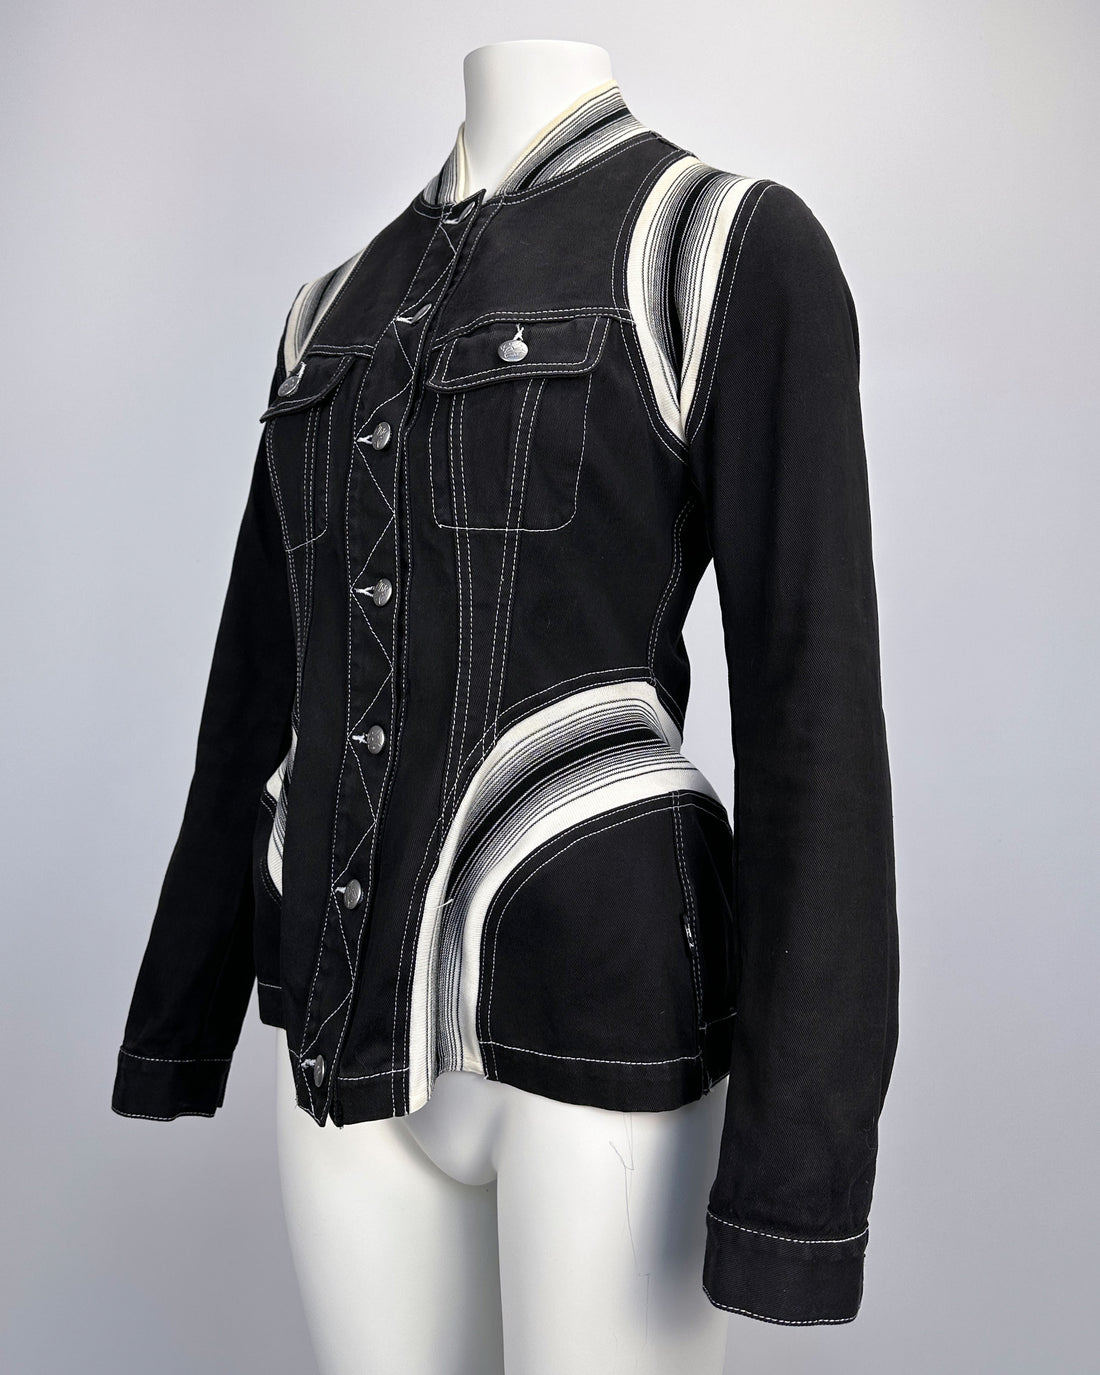 Jean Paul Gaultier Black & White Light Jacket 1990's